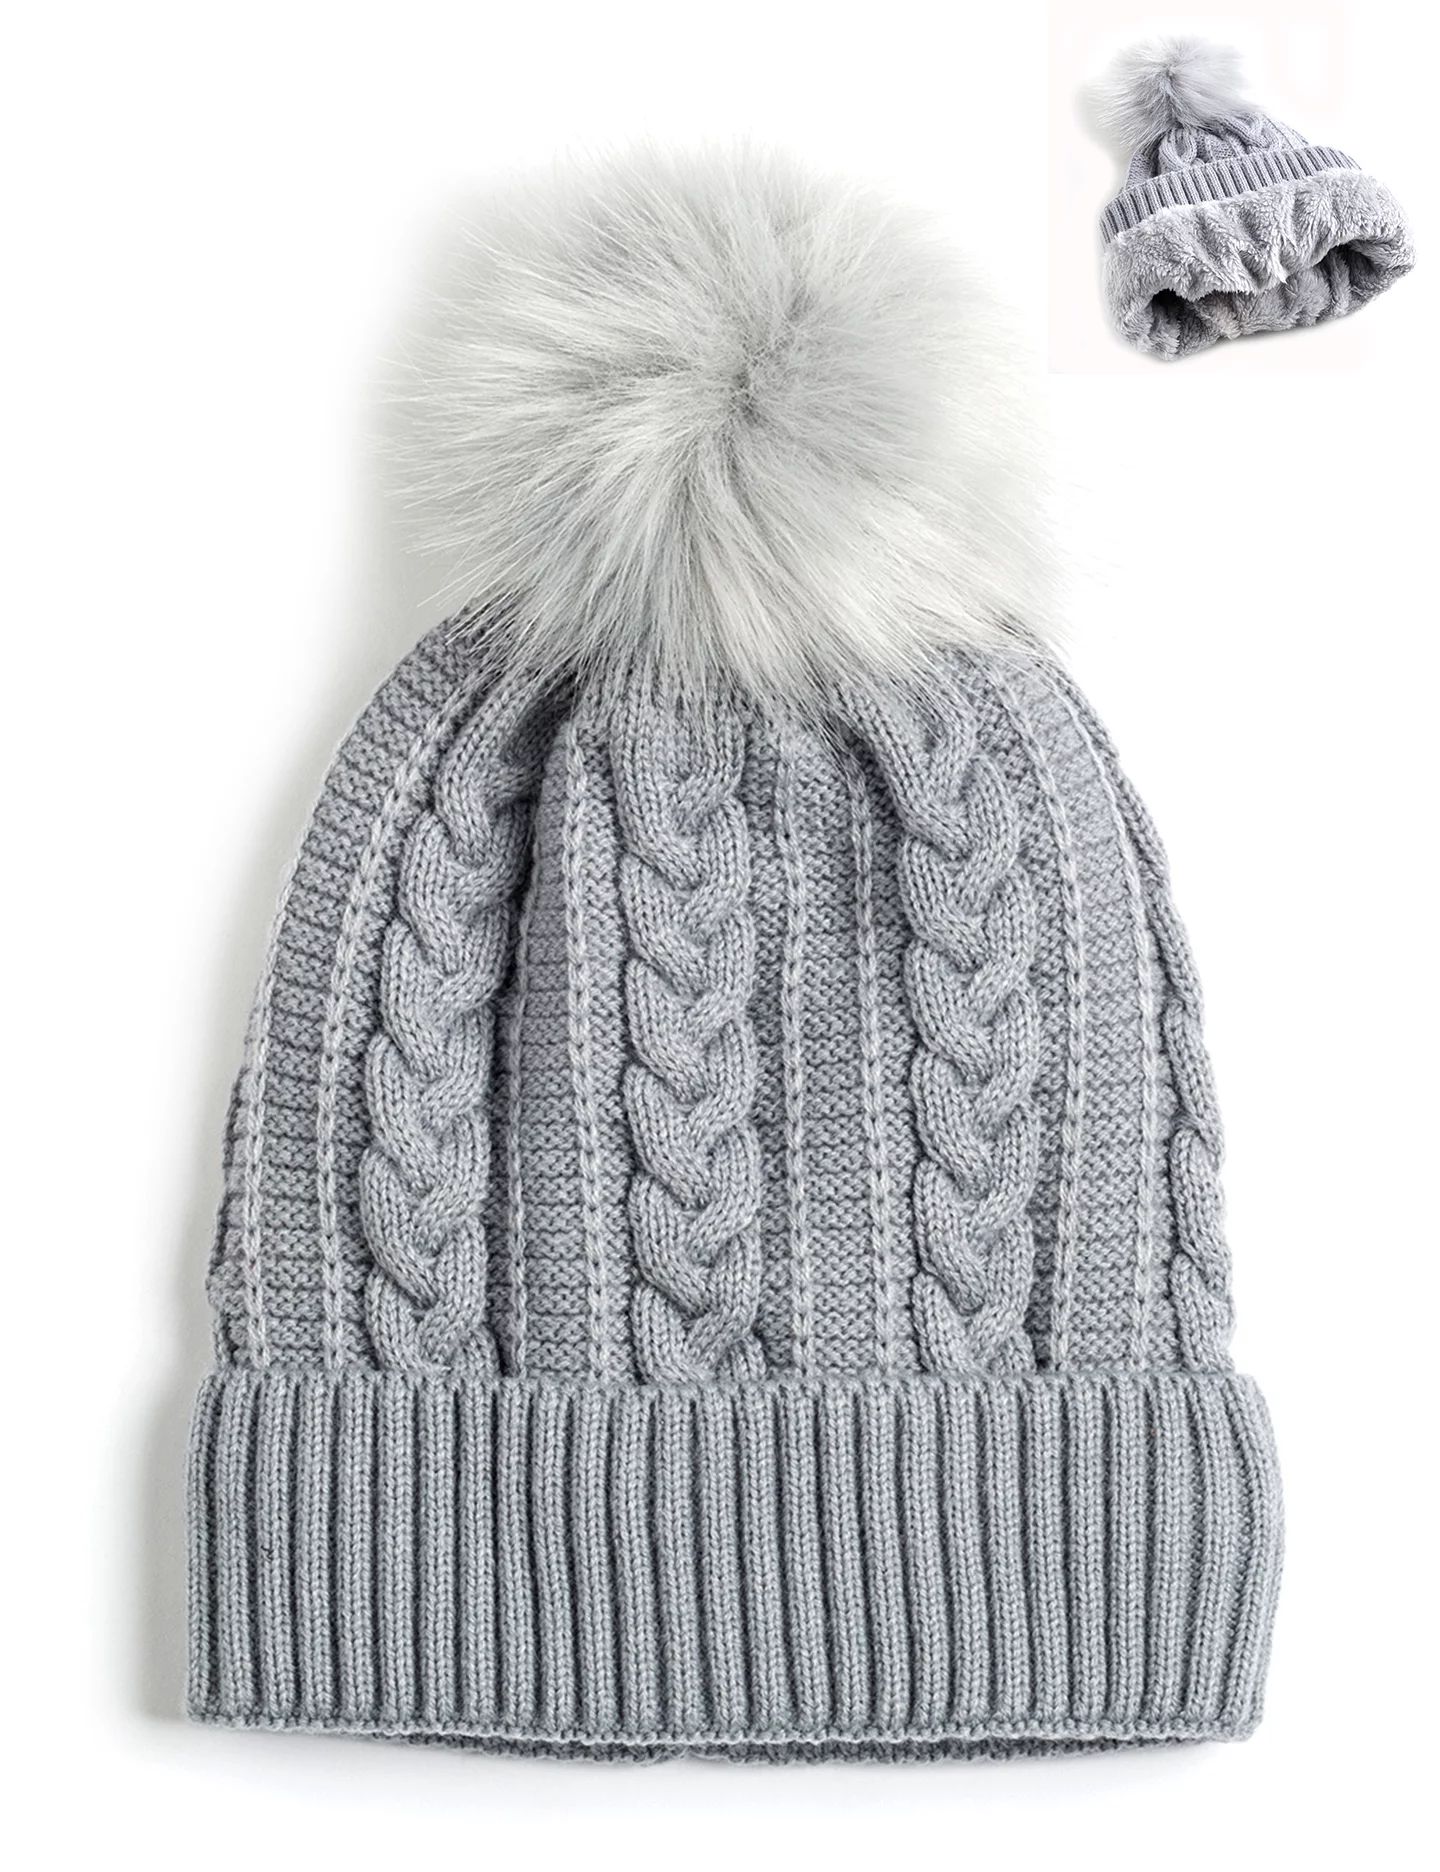 Newbee Fashion - Women Winter Faux Fur Pom Pom Beanie Hat with Warm Fleece Lined Thick Skull Ski ... | Walmart (US)